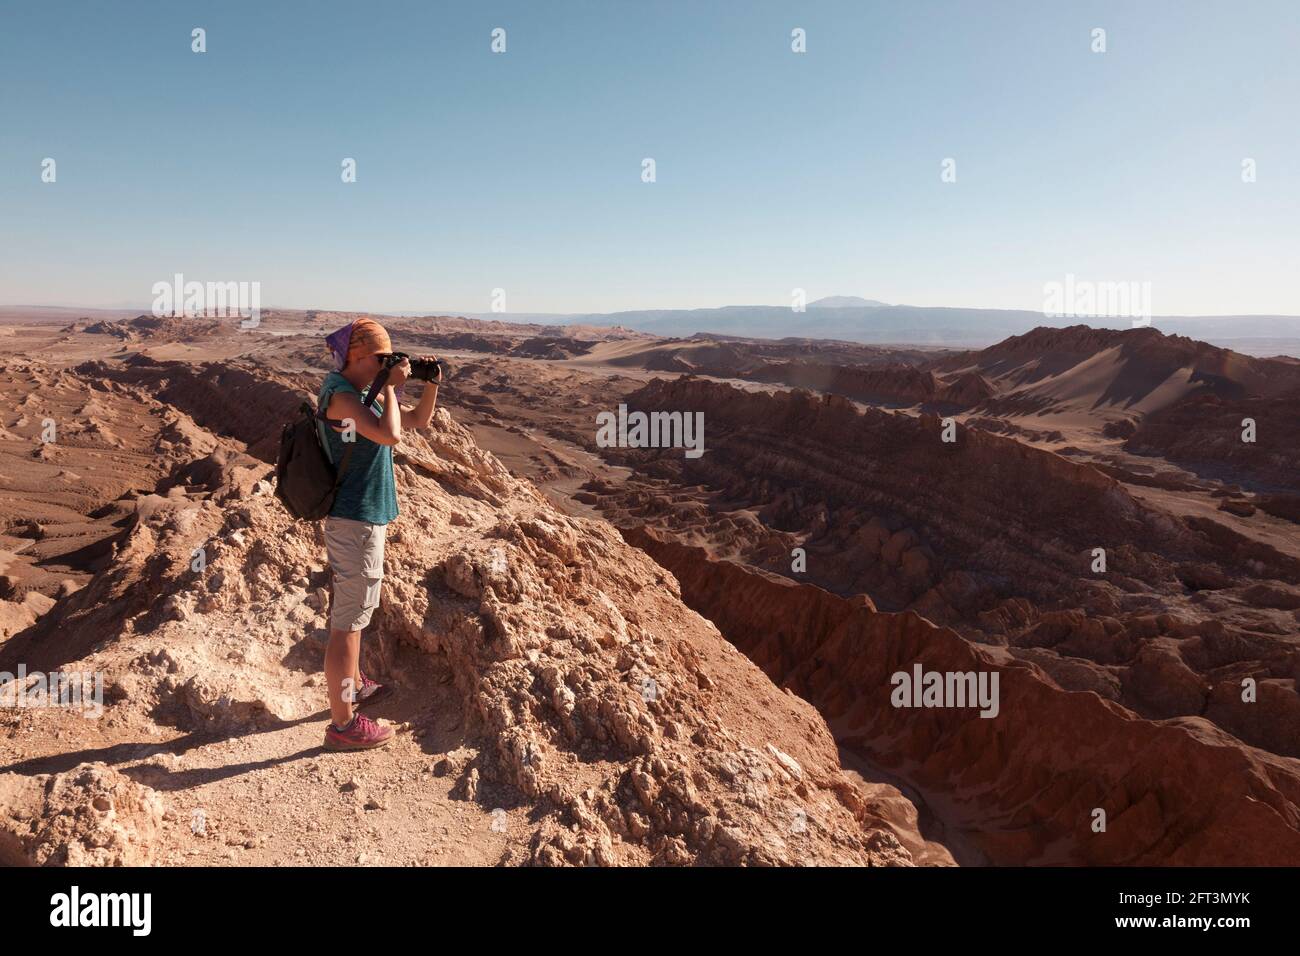 A tourist takes landscape photographs of the amazing desert landscape near San Pedro De Atacama, Chile. Stock Photo